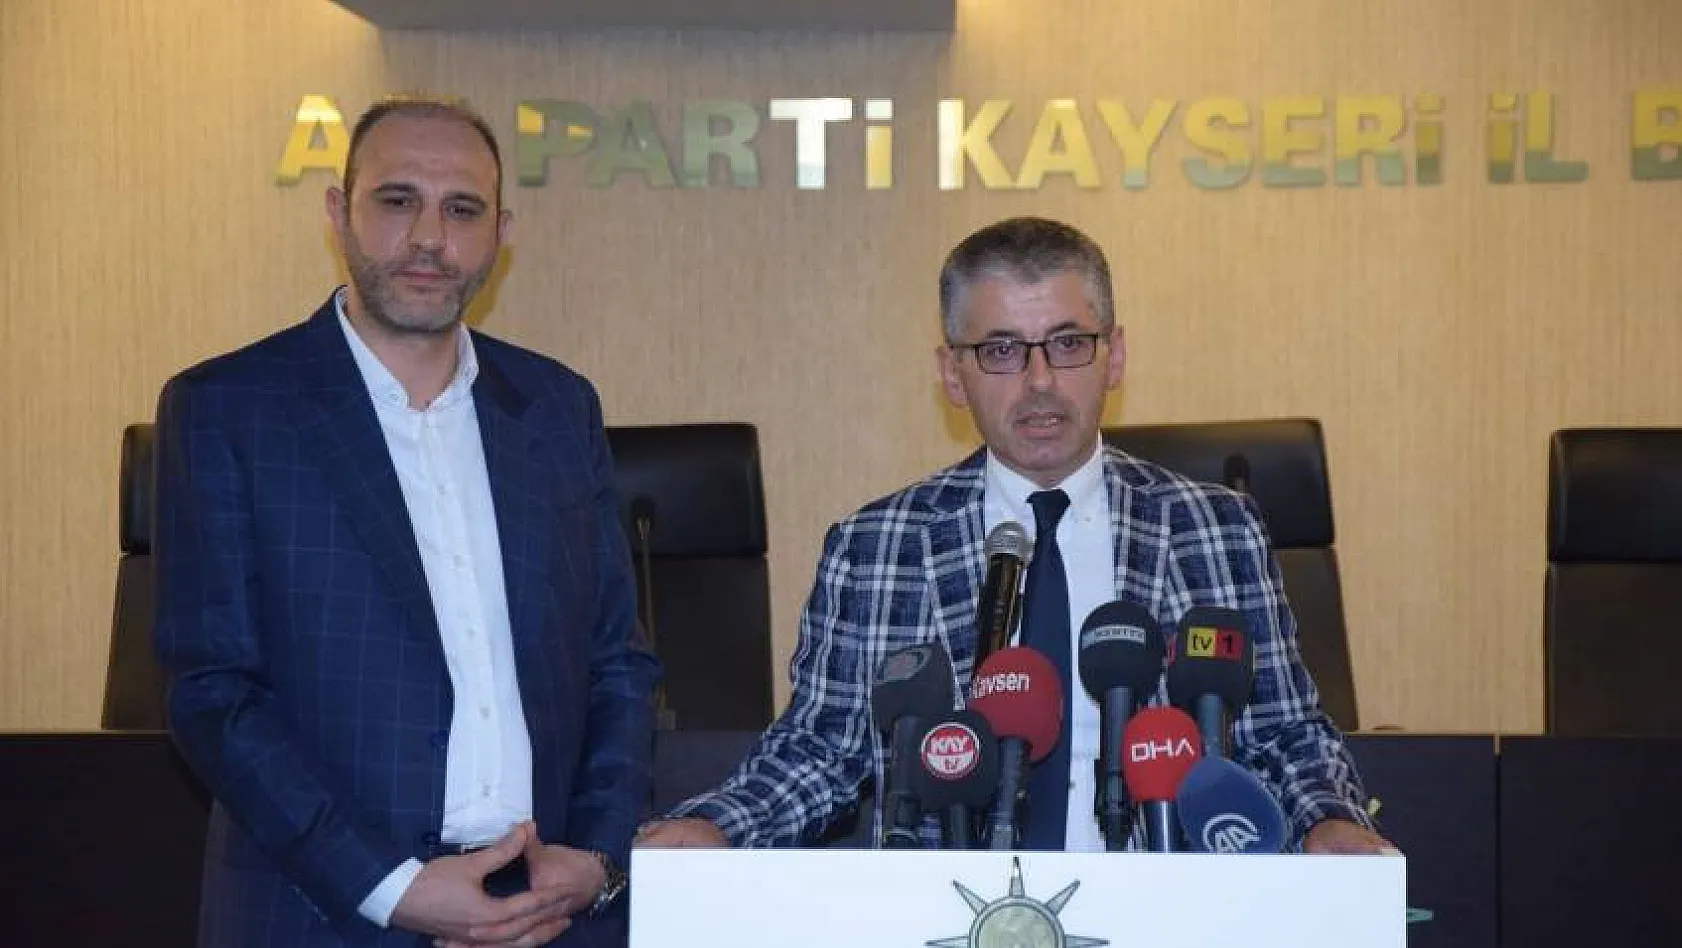 AK Parti'nin yeni İl Başkanı Çopuroğlu: Kayseri'nin Türkiye'de bir ağırlığı var